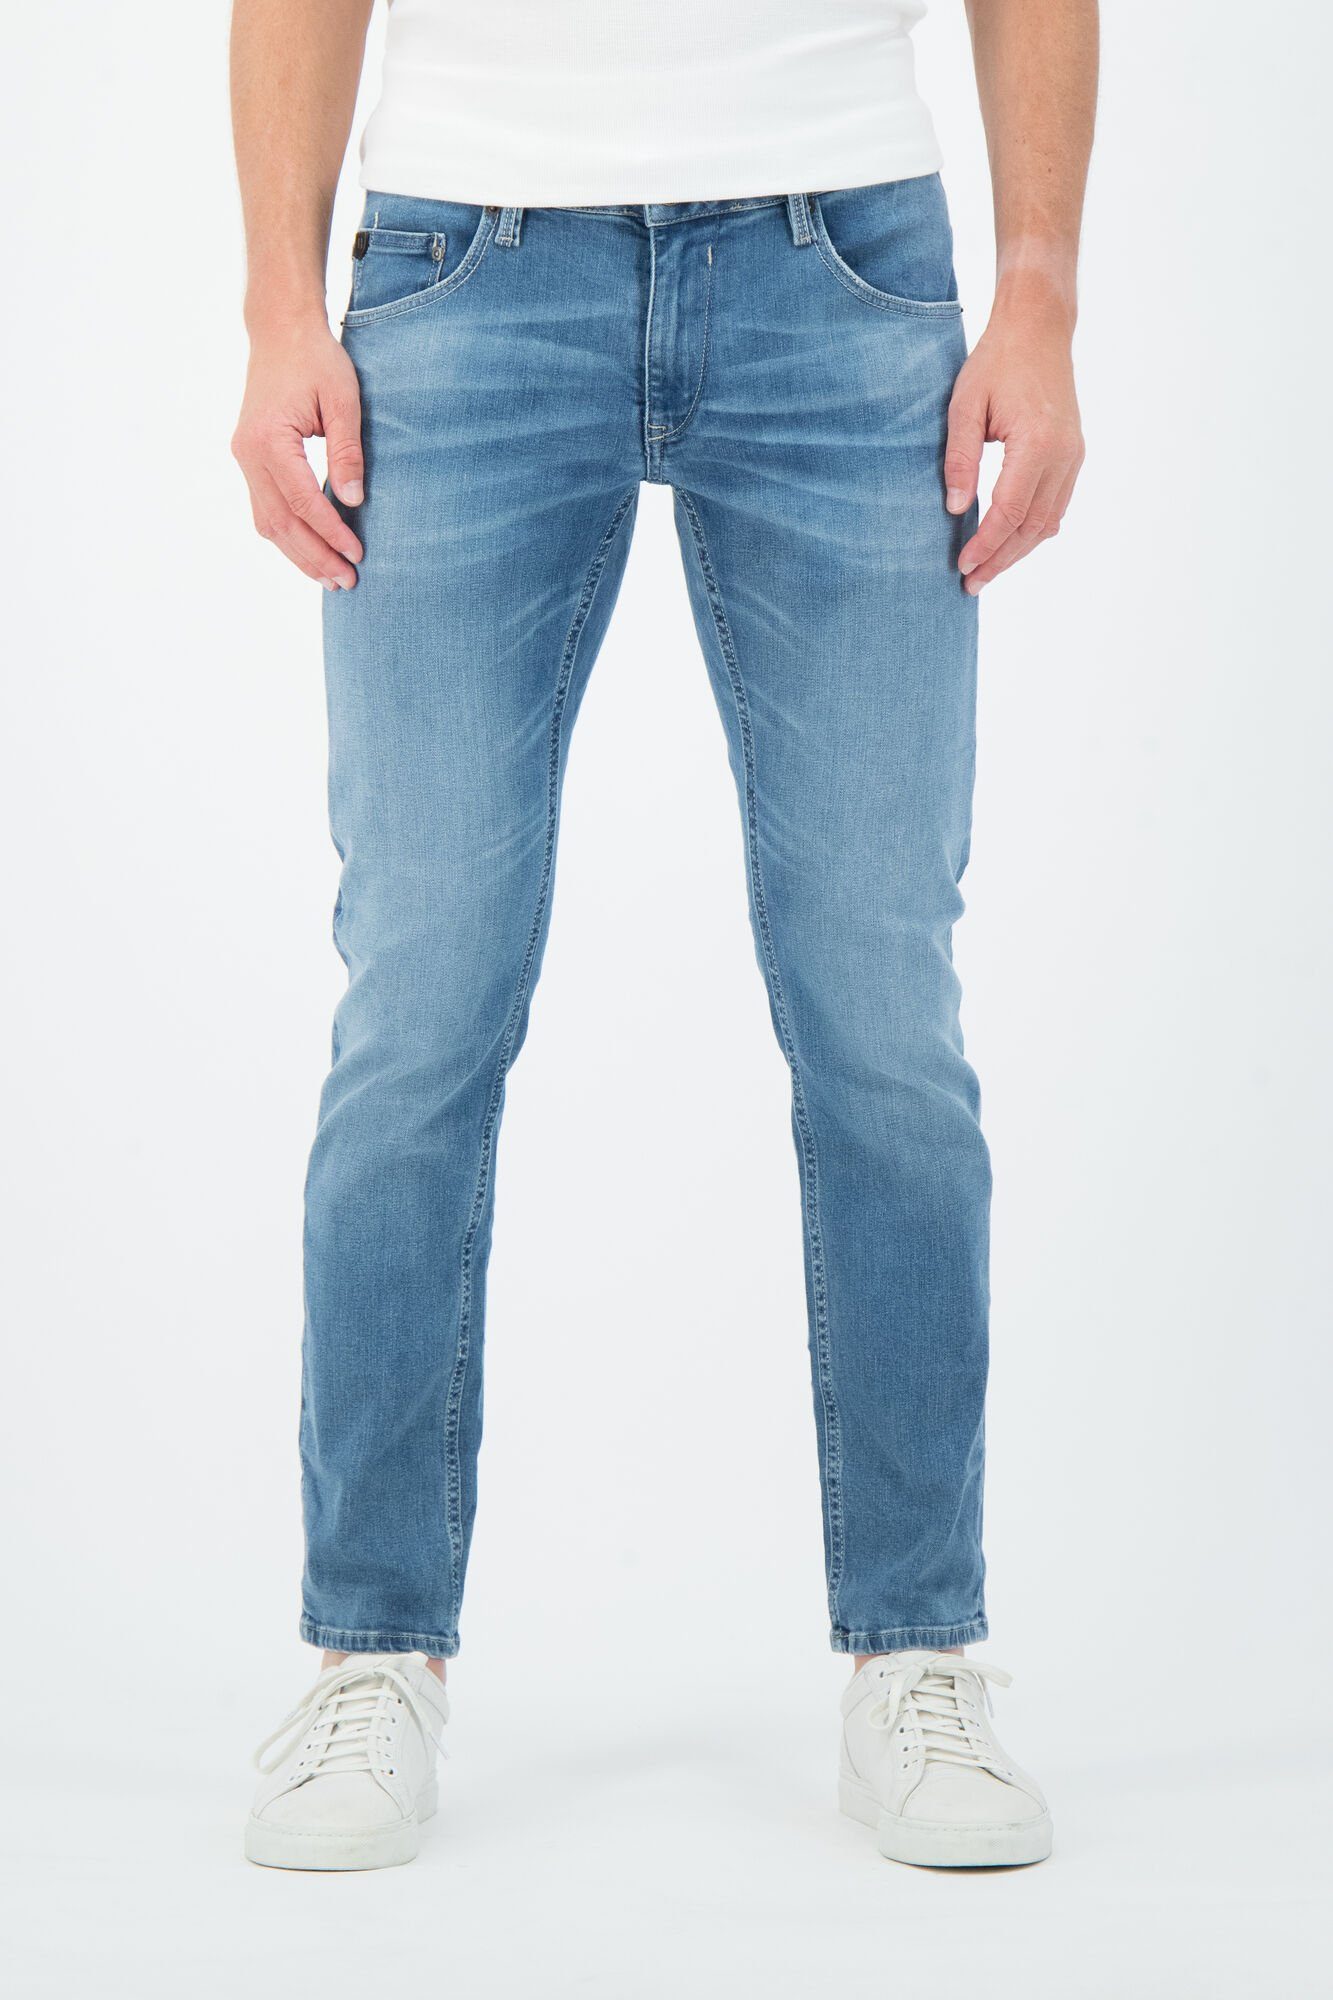 GARCIA JEANS 5-Pocket-Jeans GARCIA RUSSO blue light used 611.6545 - Motion  Denim | Stretchjeans